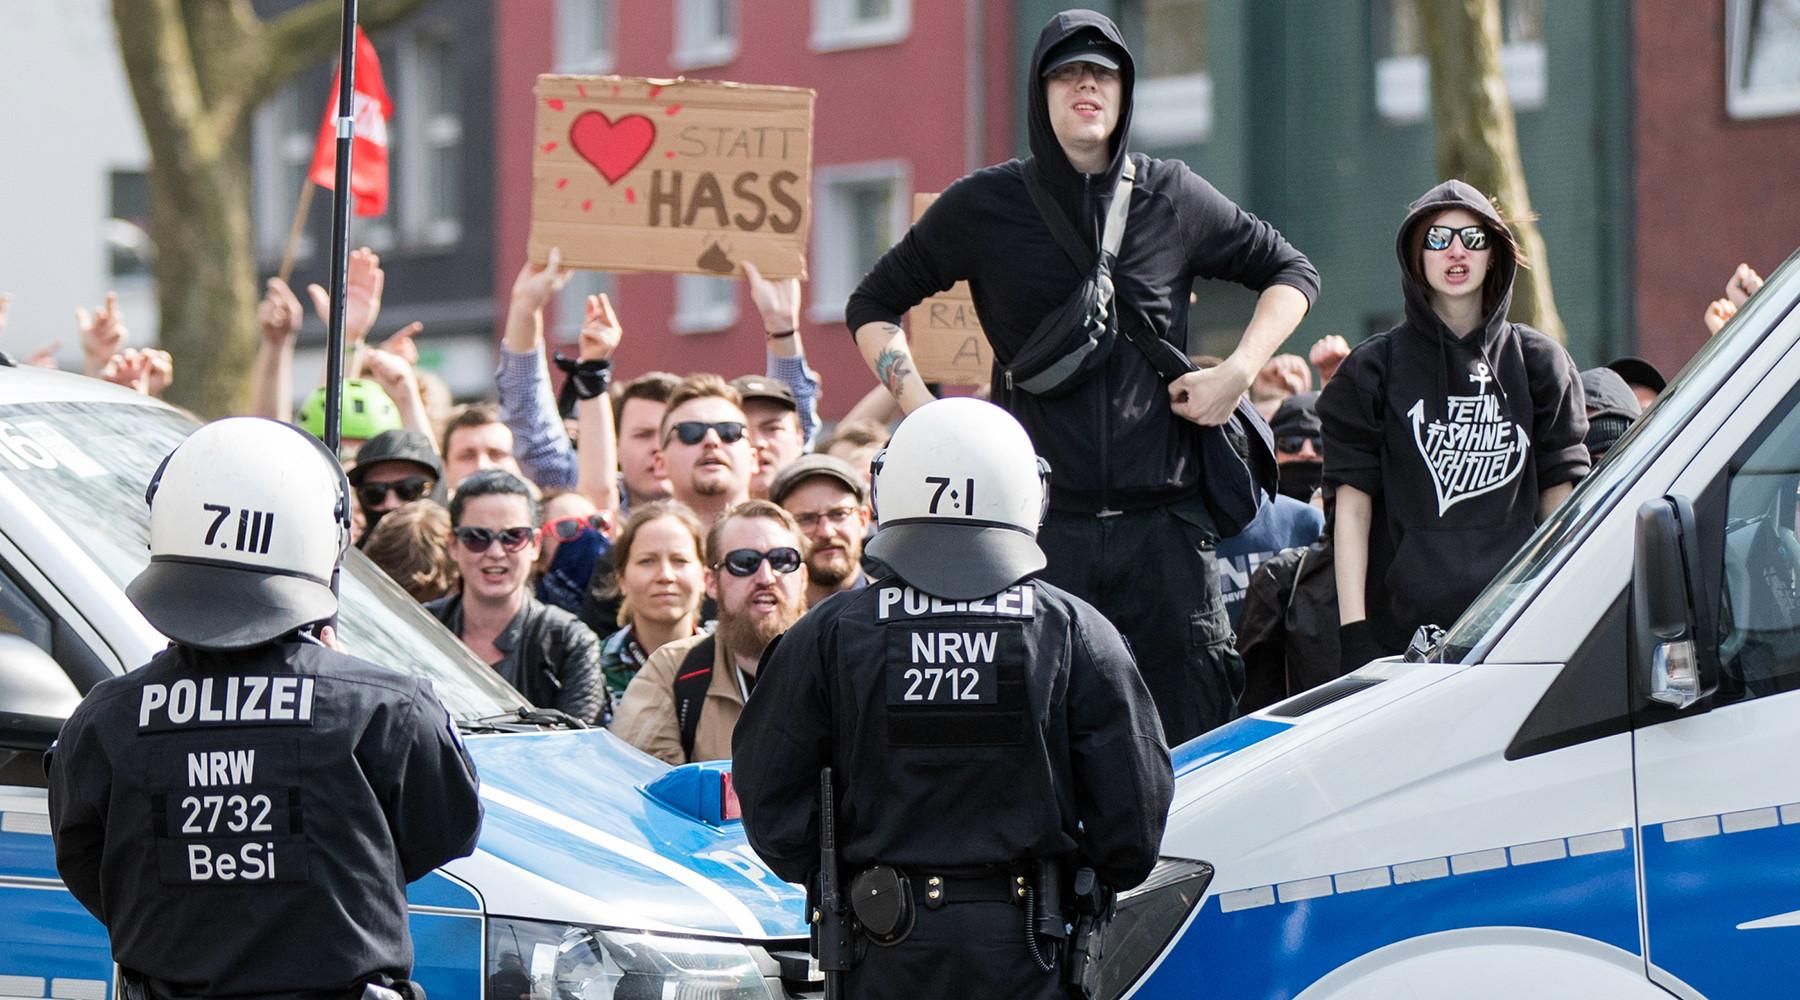 Полицейские на митинге сторонников правых движений AFP © Marcel Kusch / dpa